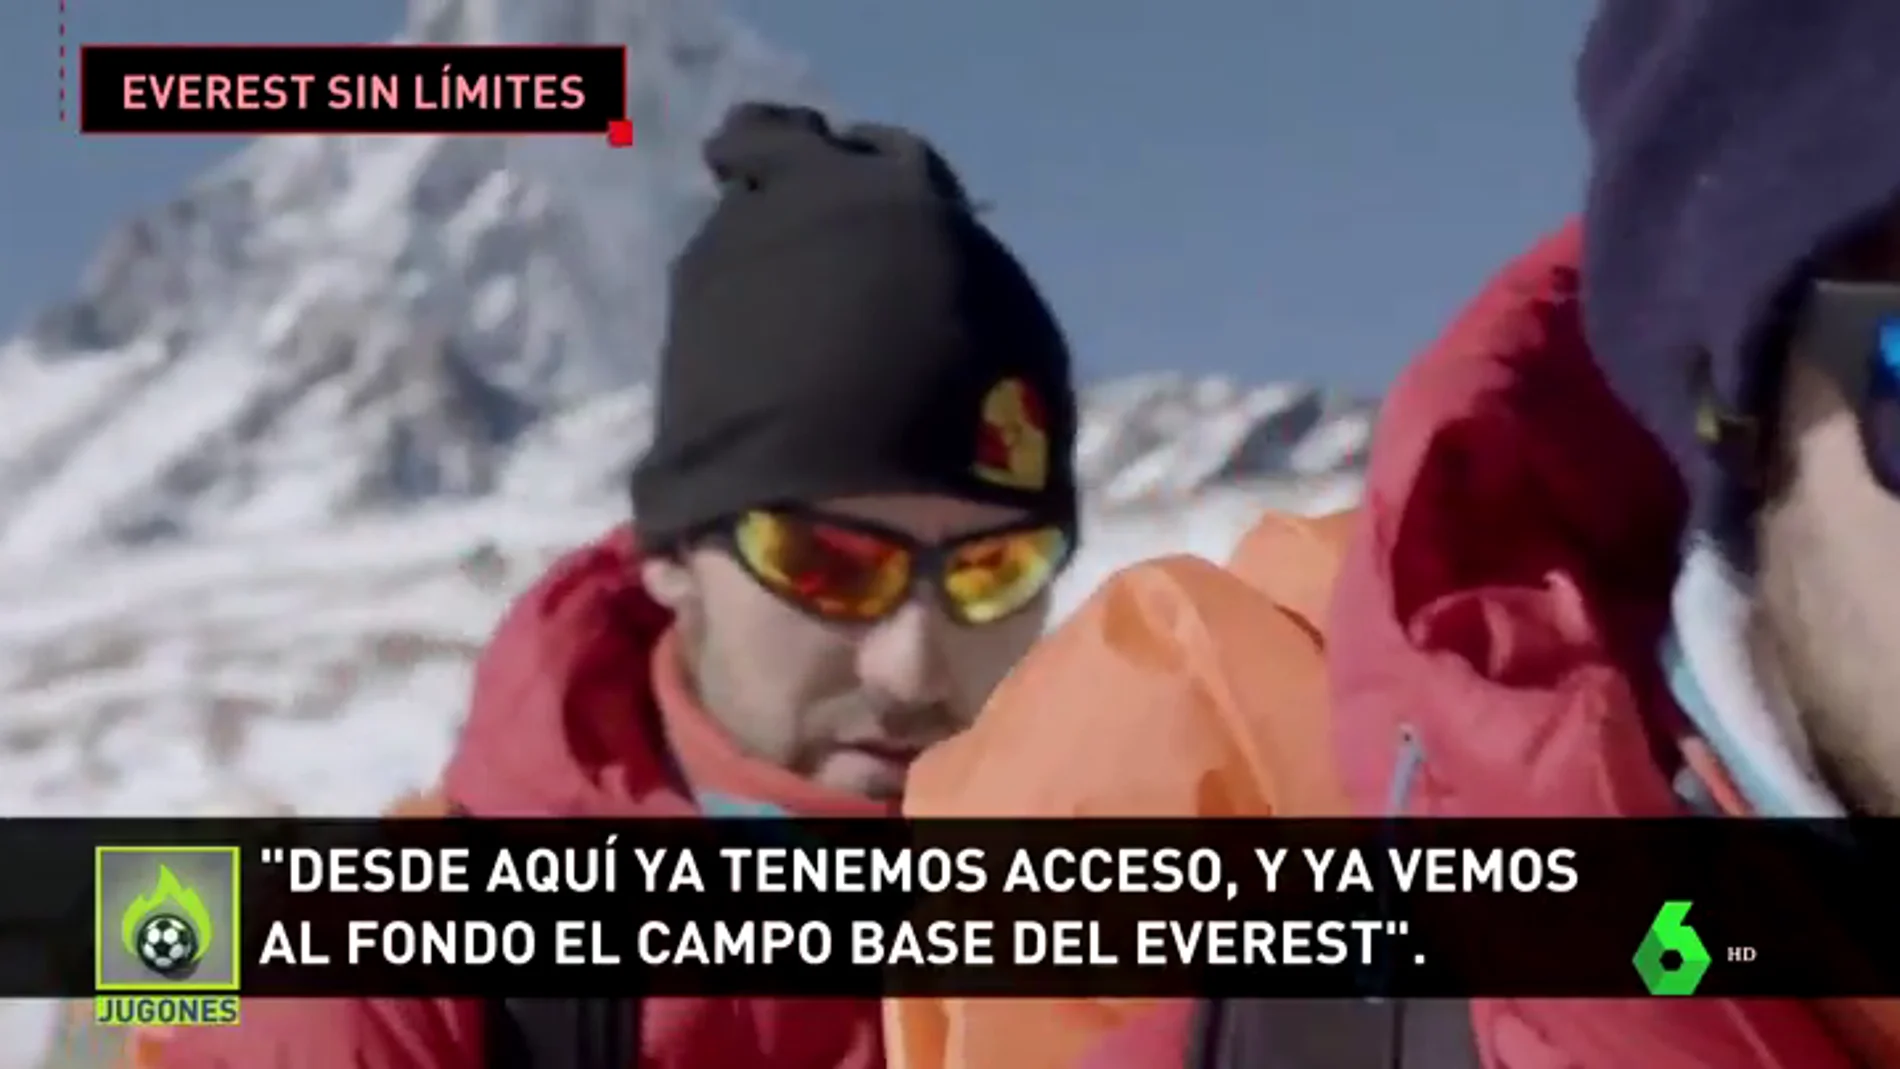 La hazaña de tres jóvenes discapacitados que han subido al campo base del Everest